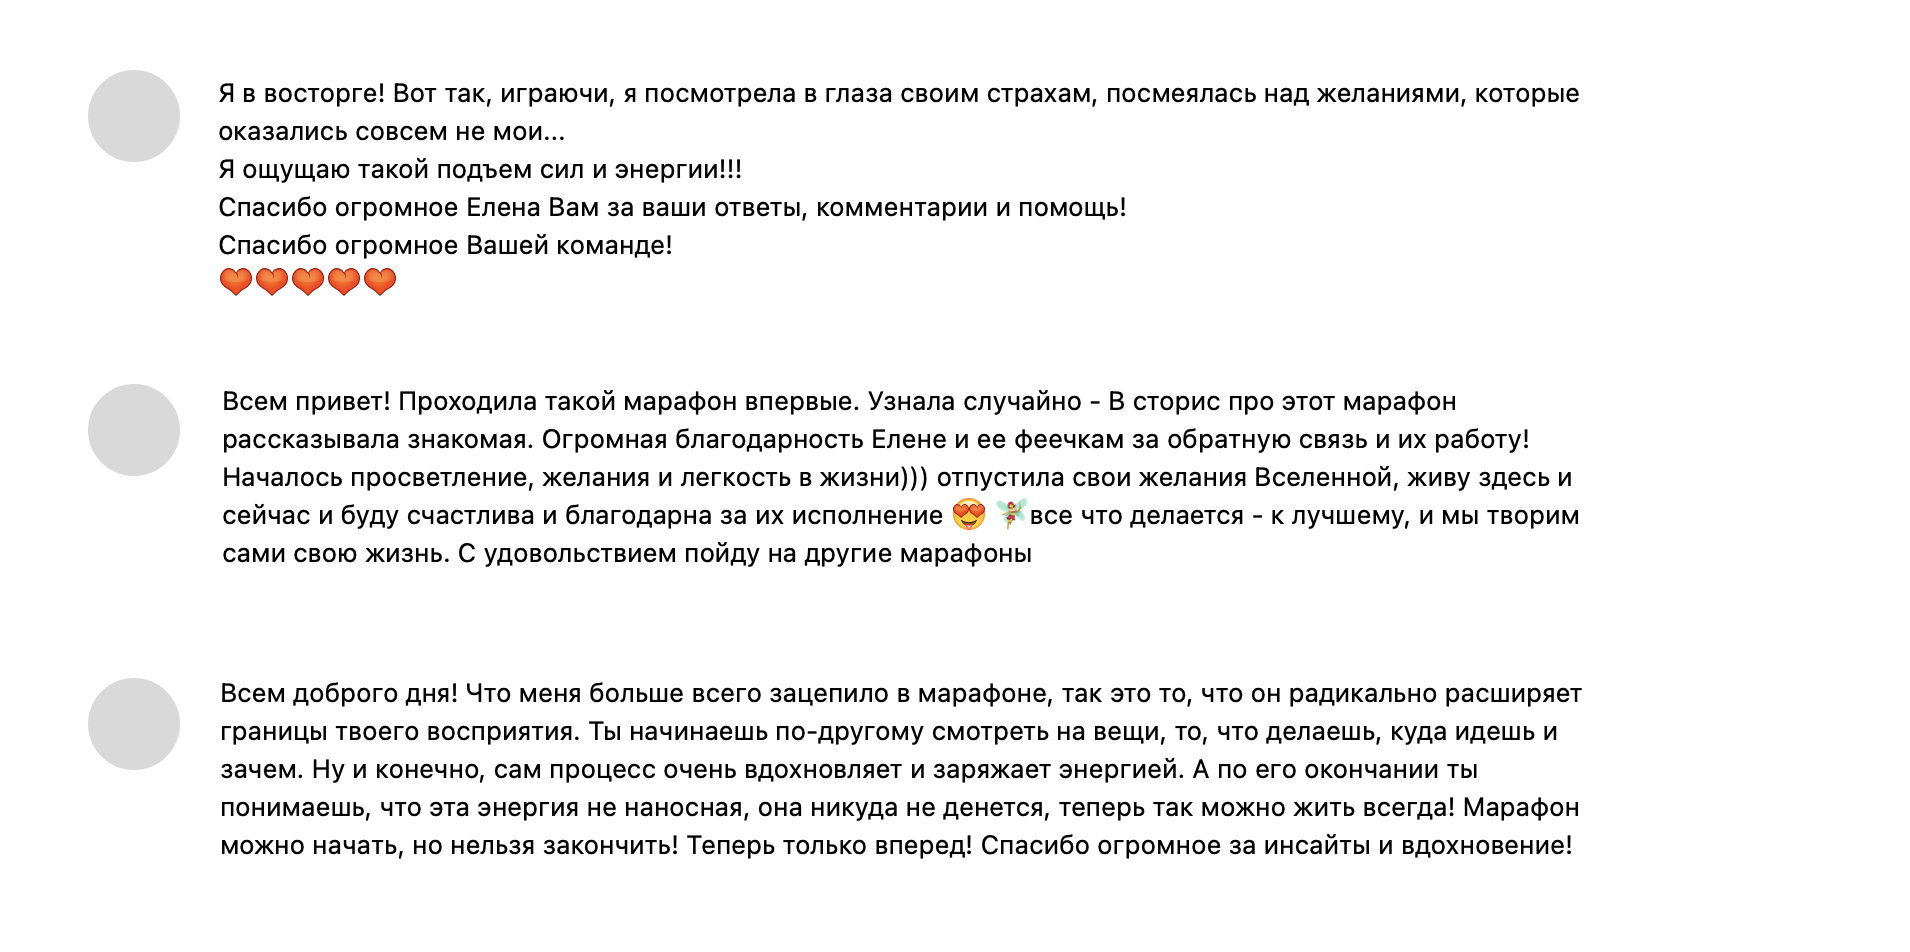 Скриншоты восторженных отзывов из официальной группы Марафона желаний Елены Блиновской